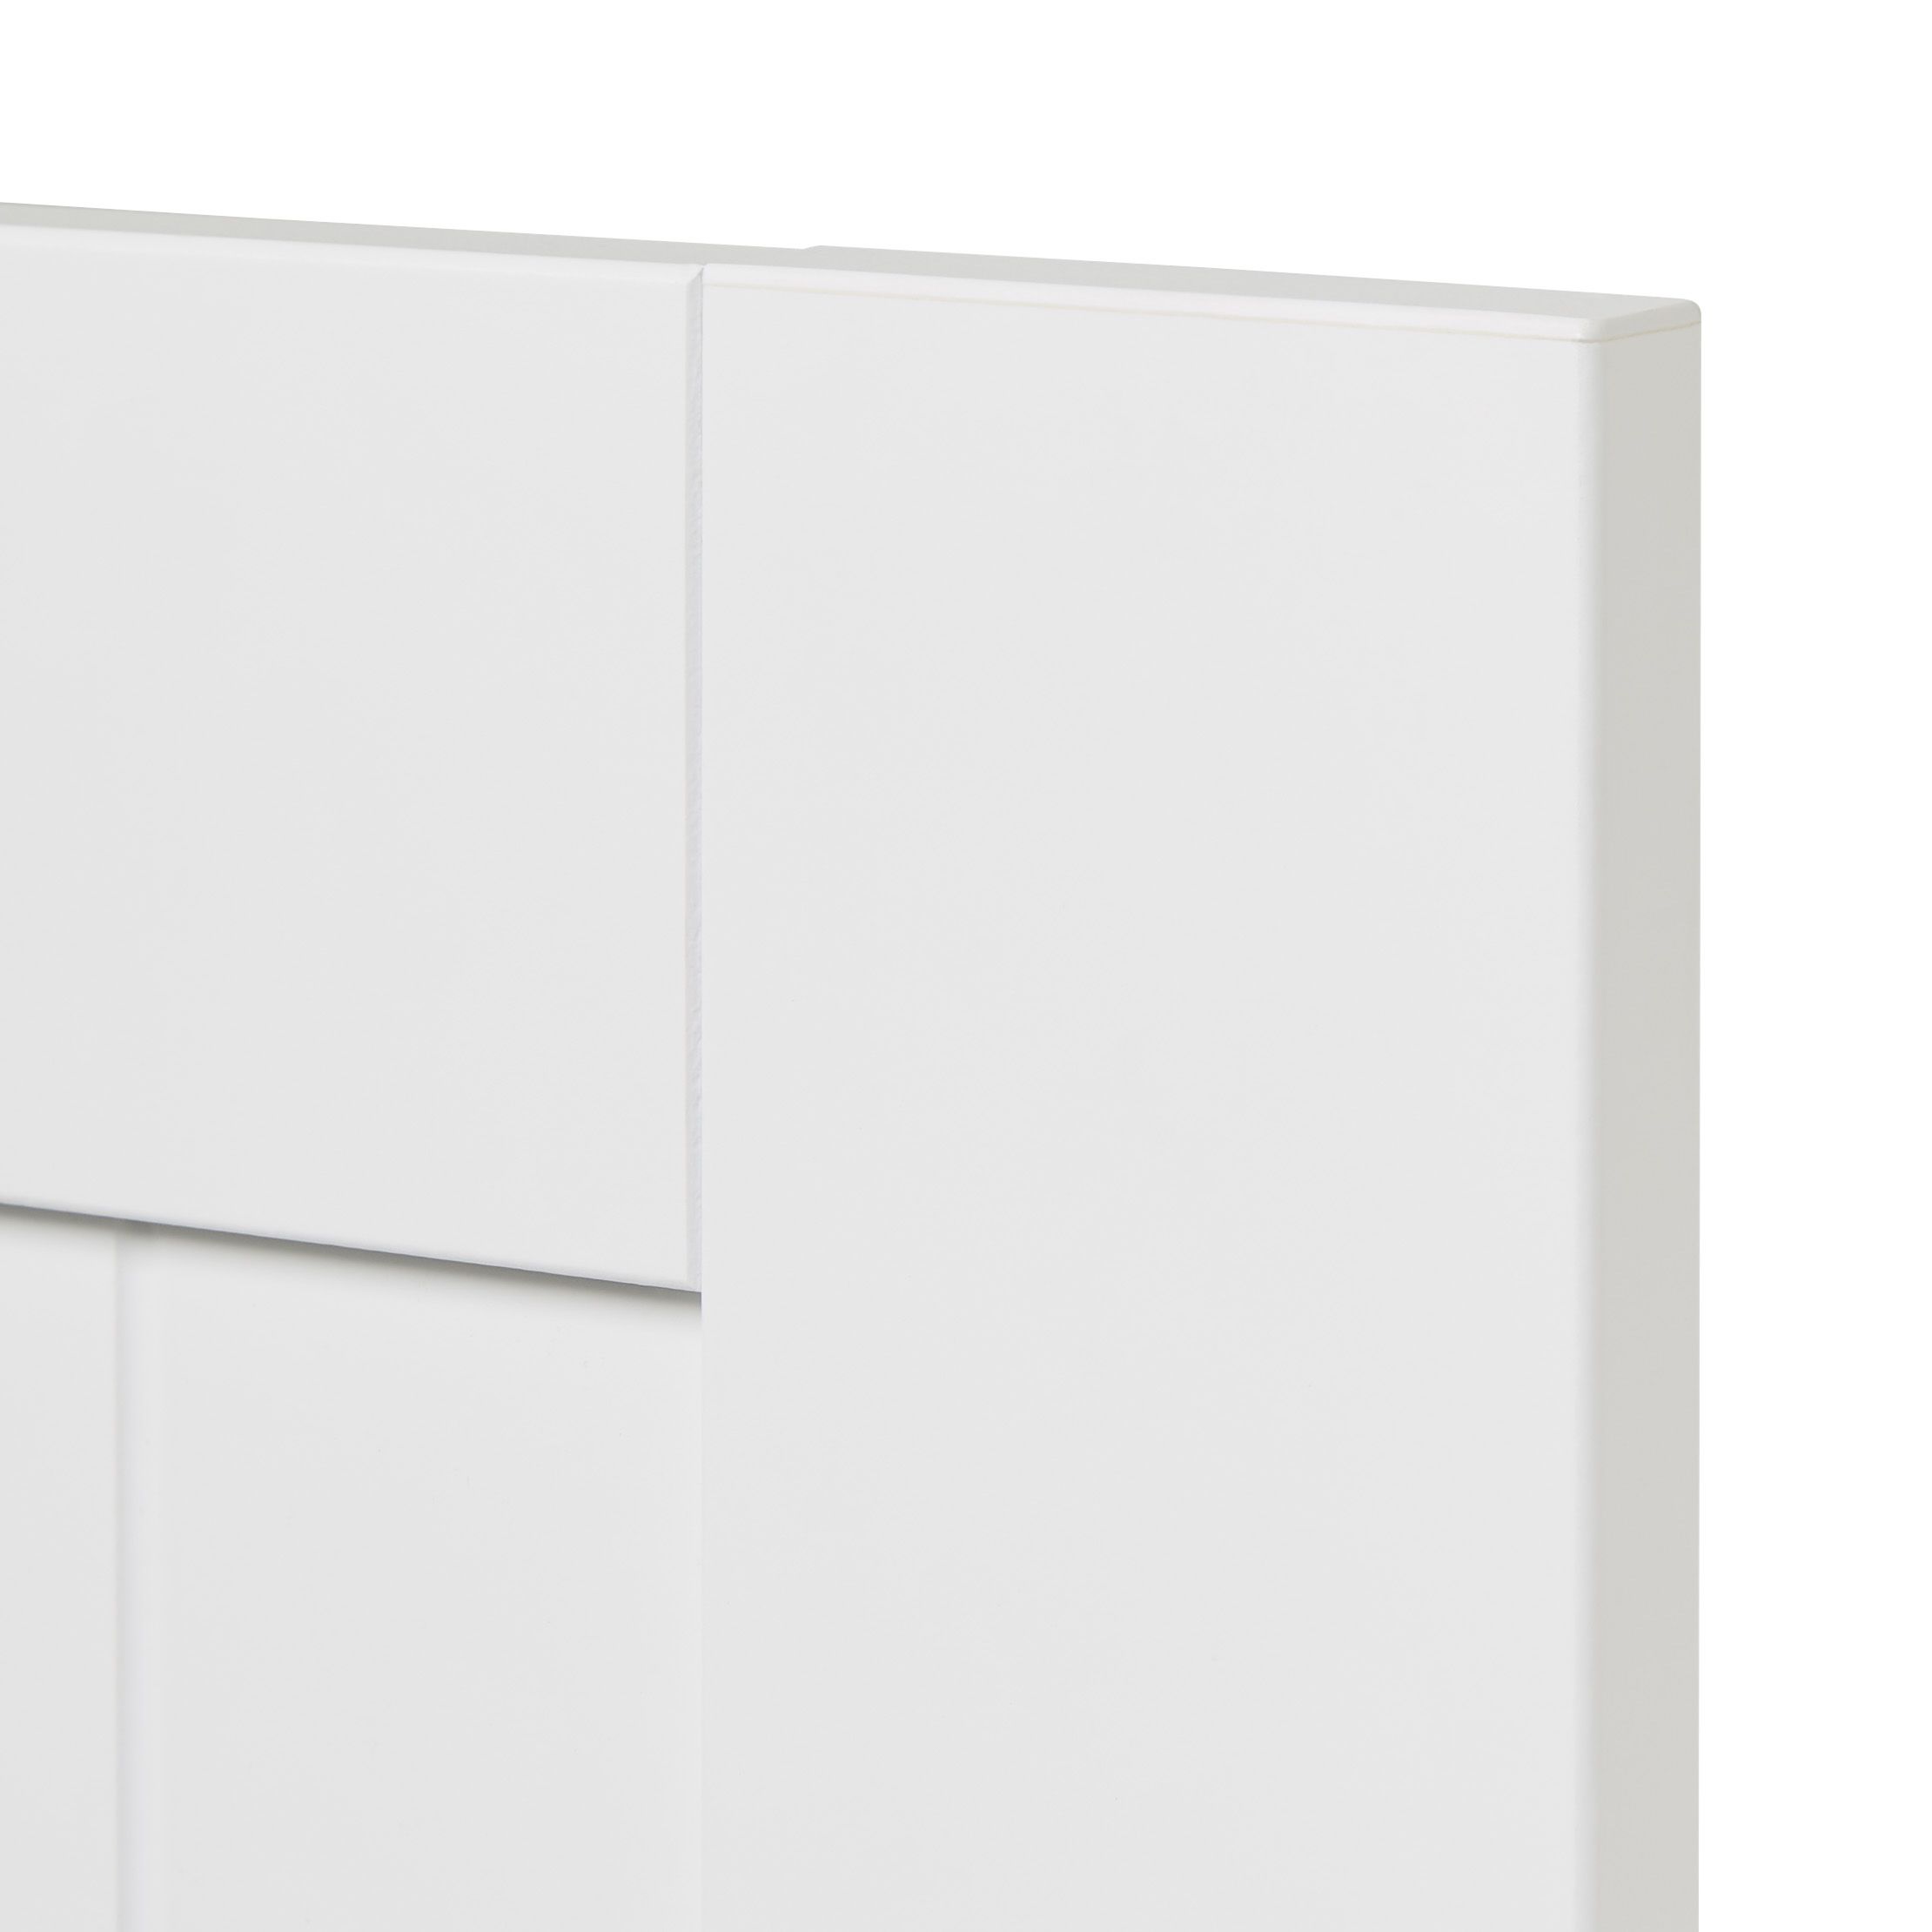 GoodHome Alpinia Matt white Drawer front, bridging door & bi fold door, (W)400mm (H)356mm (T)18mm